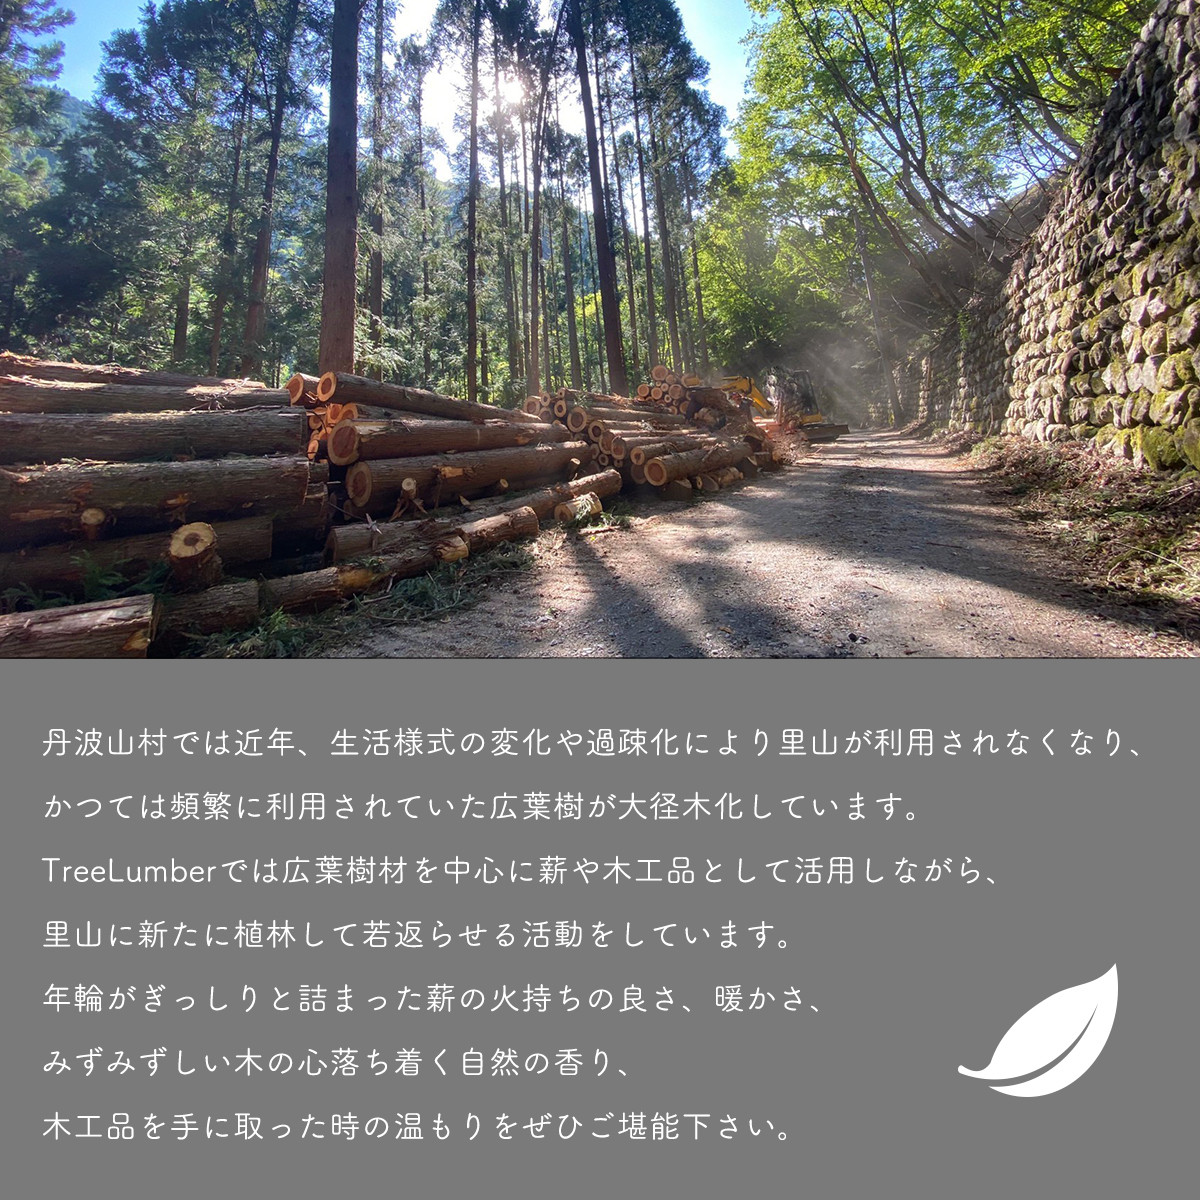 丹波山村の豊かな森林から生まれました。森林保護にも役立っています。